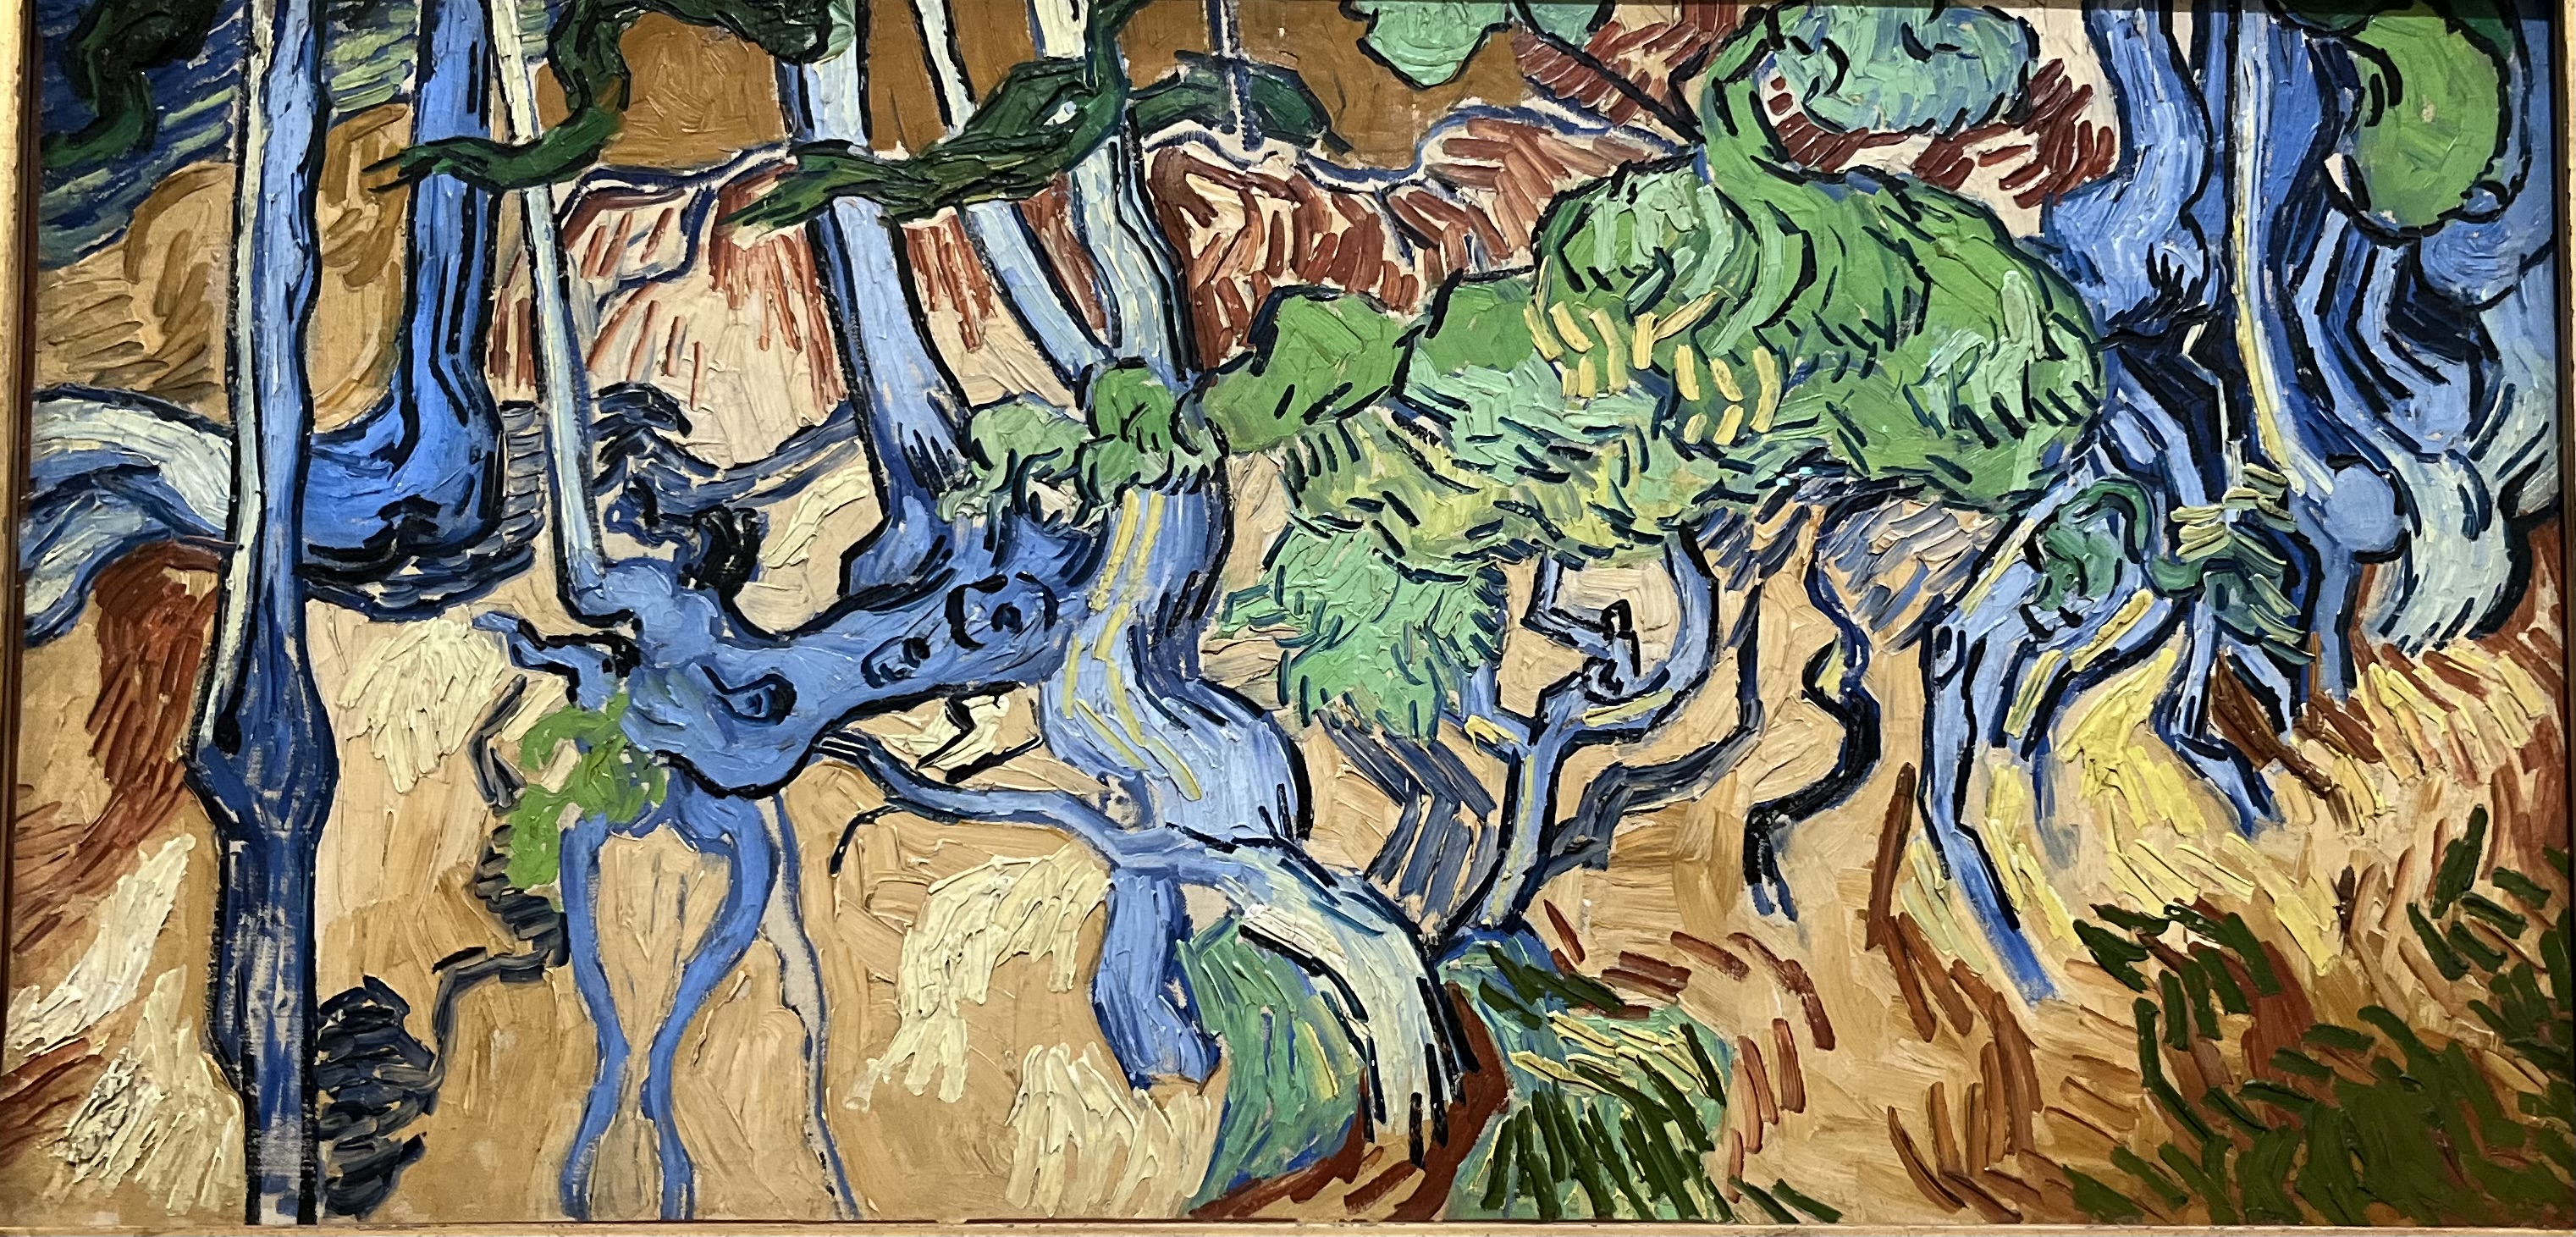 Cet entrelacs de racines dénudées, cadré très près, est la dernière oeuvre peinte par Van Gogh avant son suicide (Photo PB)